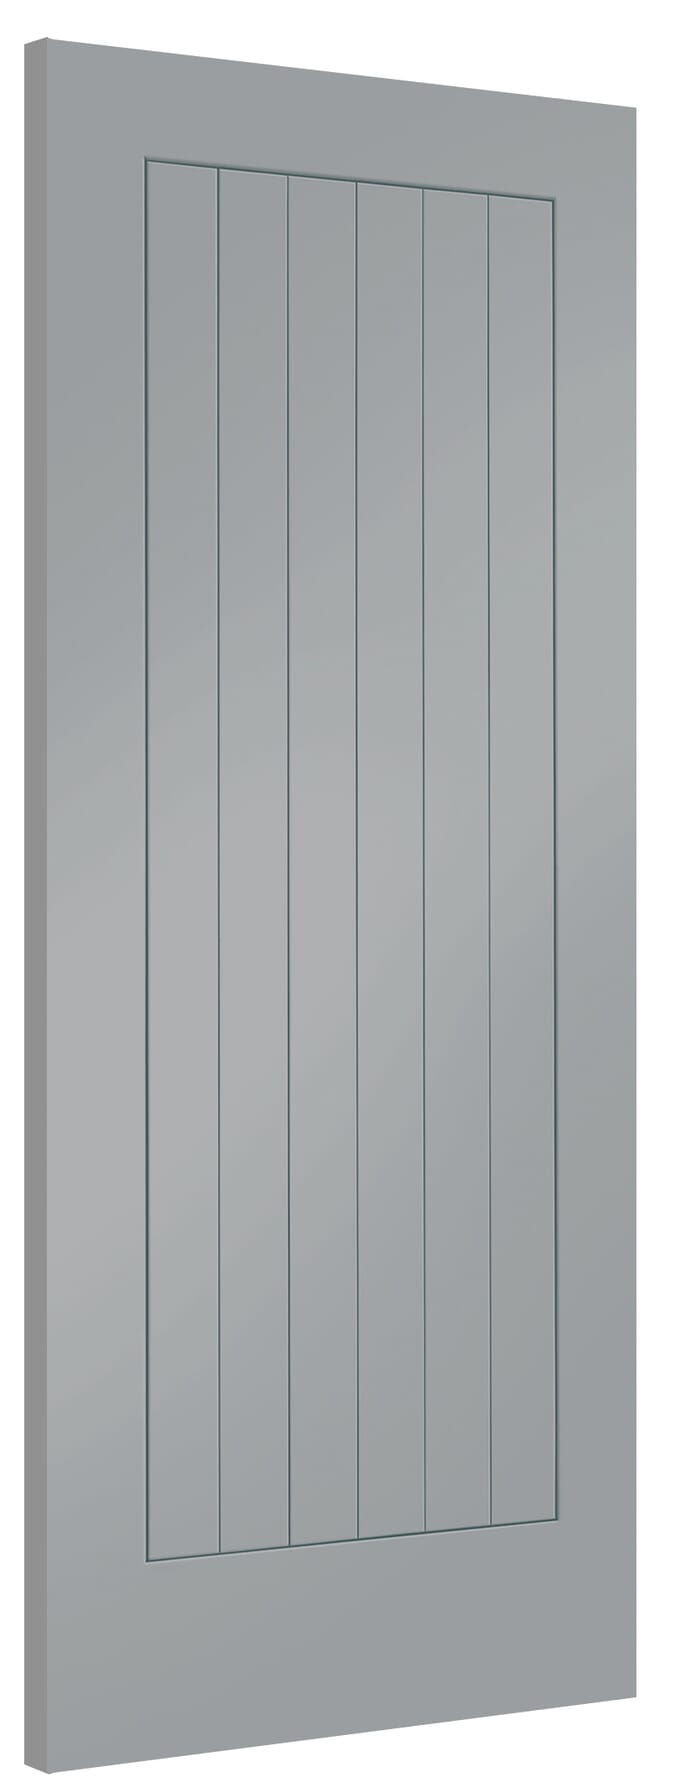 726x2040x40mm Suffolk Storm Grey Internal Doors